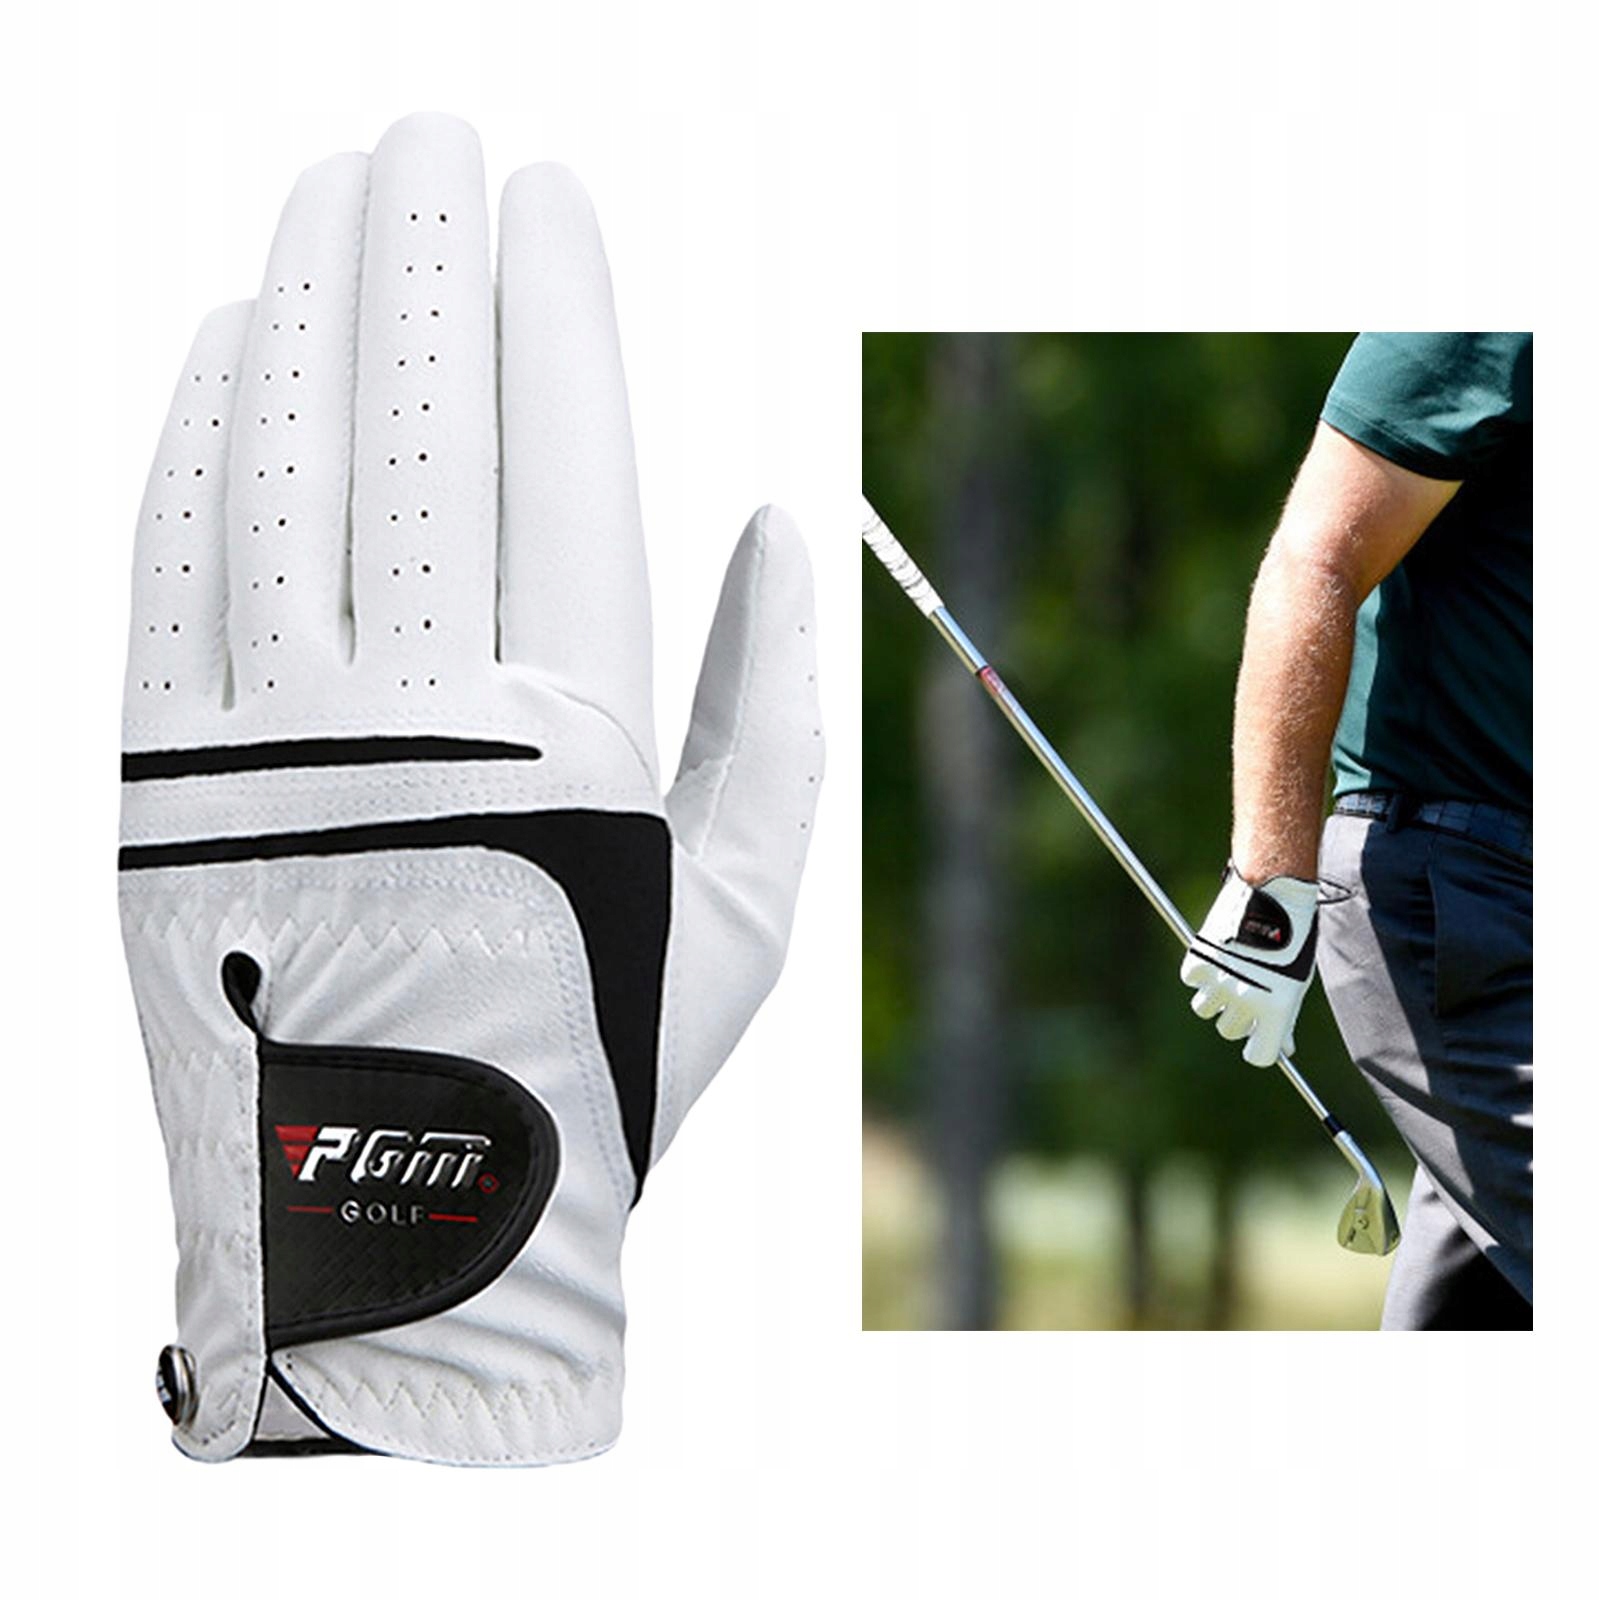 Мужские перчатки для гольфа производительность / код права производителя Comush-54054001